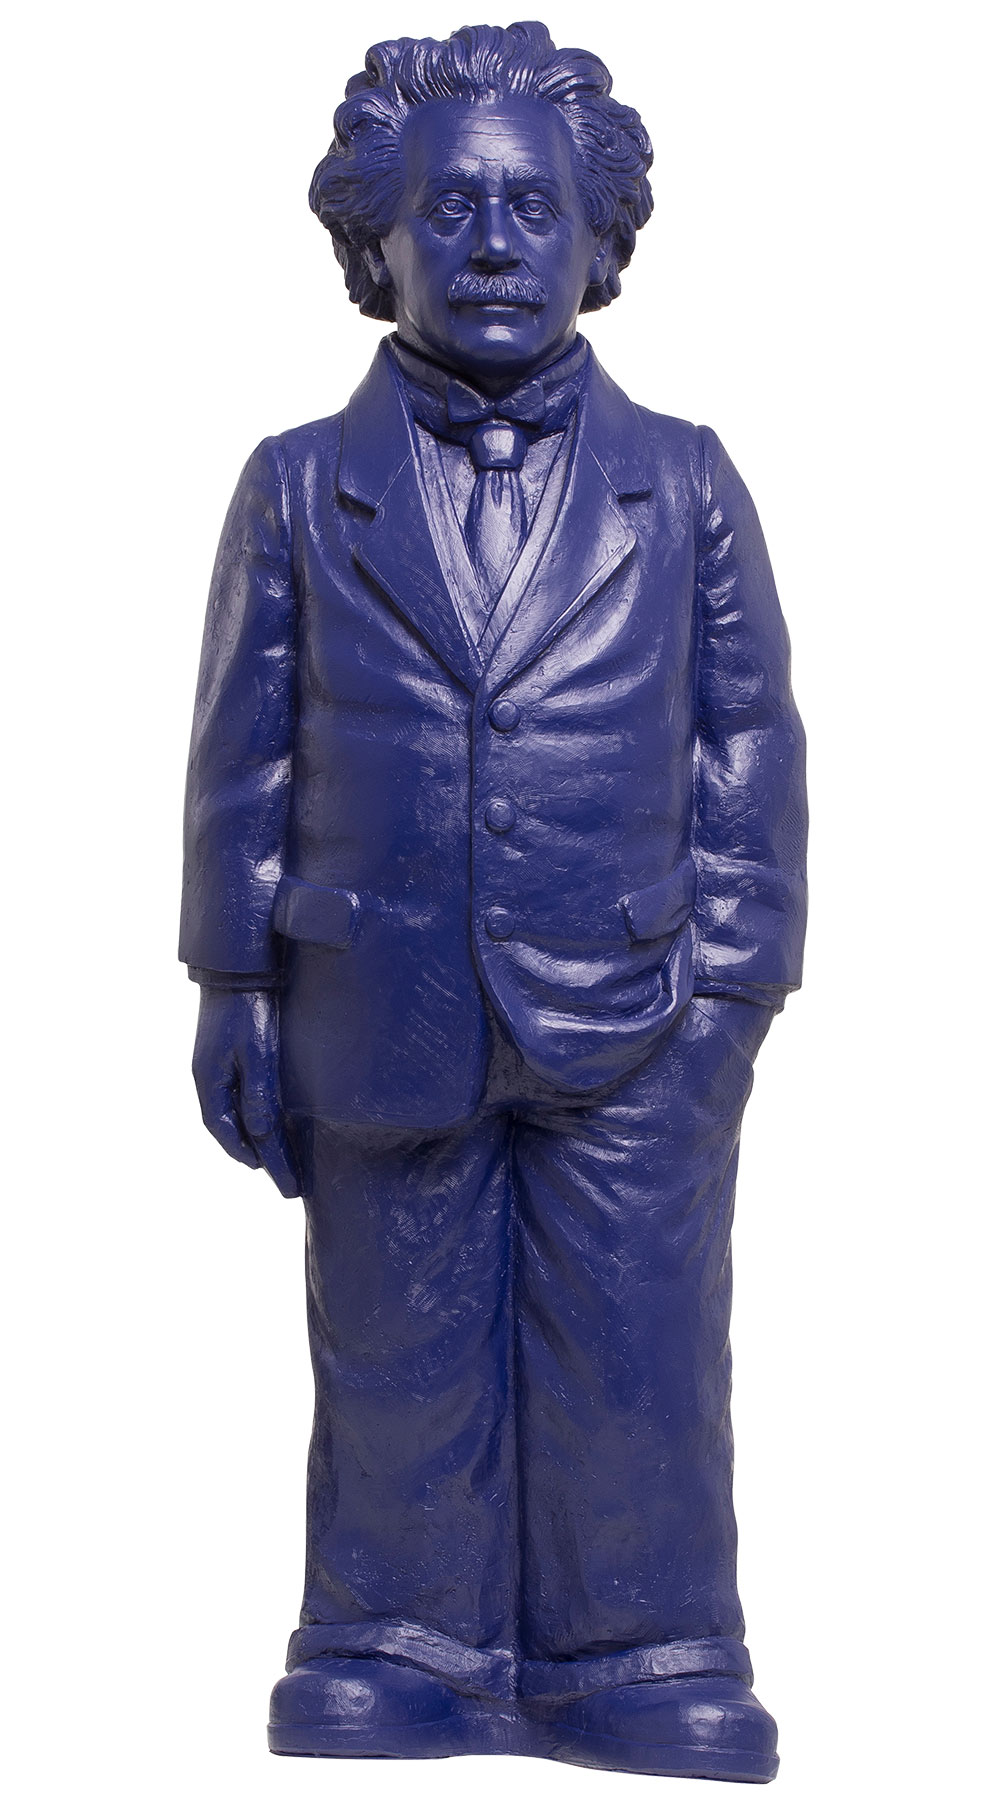 Ottmar Hörl: Skulptur 'Albert Einstein' (2018), Version in Nachtblau